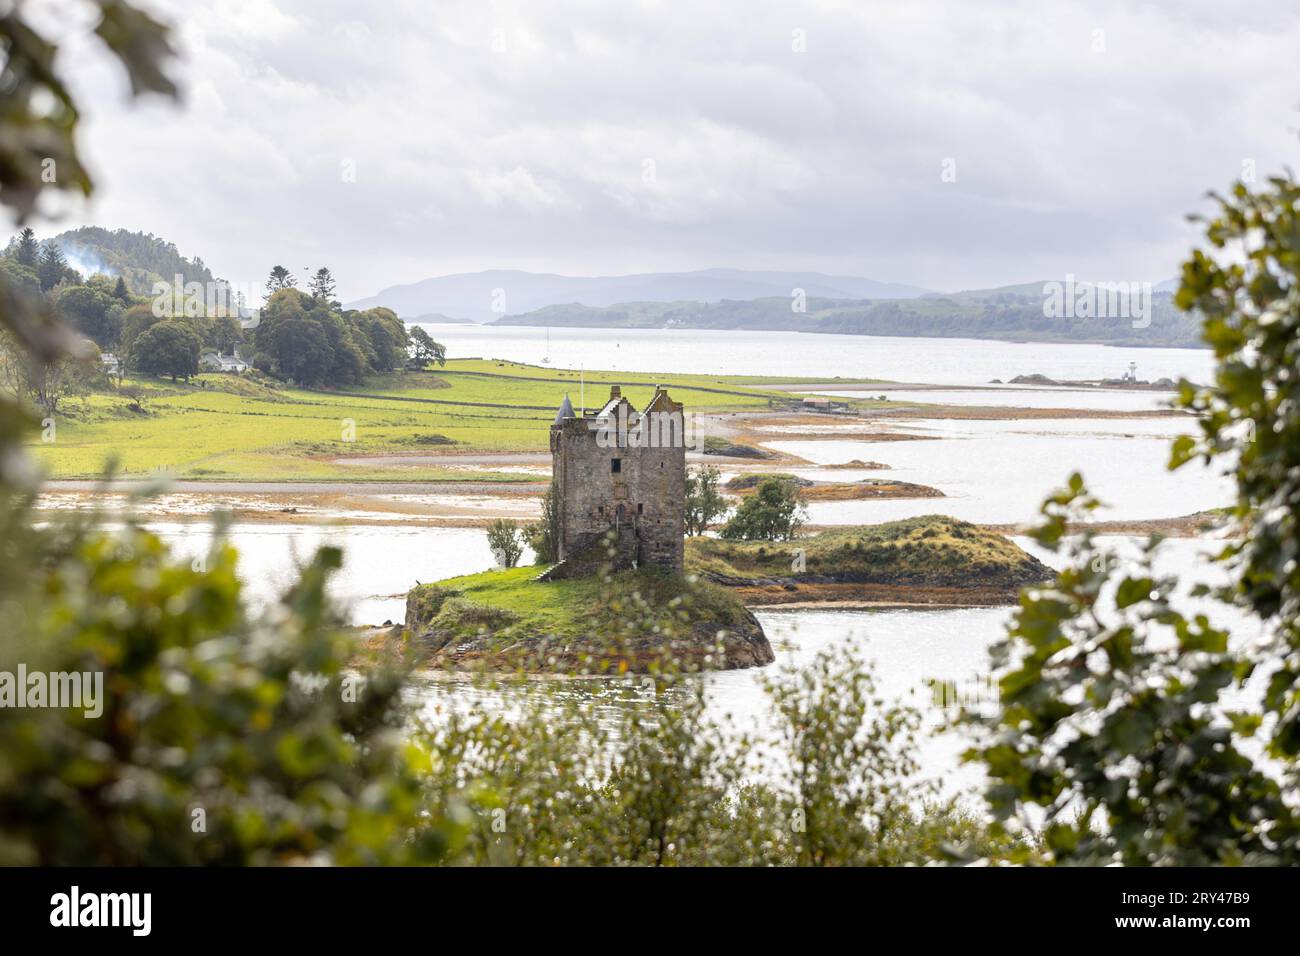 Die Burg Castle Stalker aus dem 14. Jahrhundert ad Appin, Schottland. Die Inselburg steht auf einer kleinen, felsigen Gezeiteninsel im Loch Laich, einer Bucht des Loch Linnhe. SIE diente als Filmkulisse für den Kultfilm Monty Python and the Holy Grail Ritter der Kokosnuss 21.09.2023 Appin Portnacroish Schottland Großbritannien *** il castello di Stalker del XIV secolo ad Appin, Scozia il castello dell'isola sorge su una piccola isola rocciosa di marea nel Loch Laich, una baia di Loch Linnhe è servito come set cinematografico per il film cult Monty Python e i sacri cavalieri del cocco 21 09 2023 Appin Portnac Foto Stock